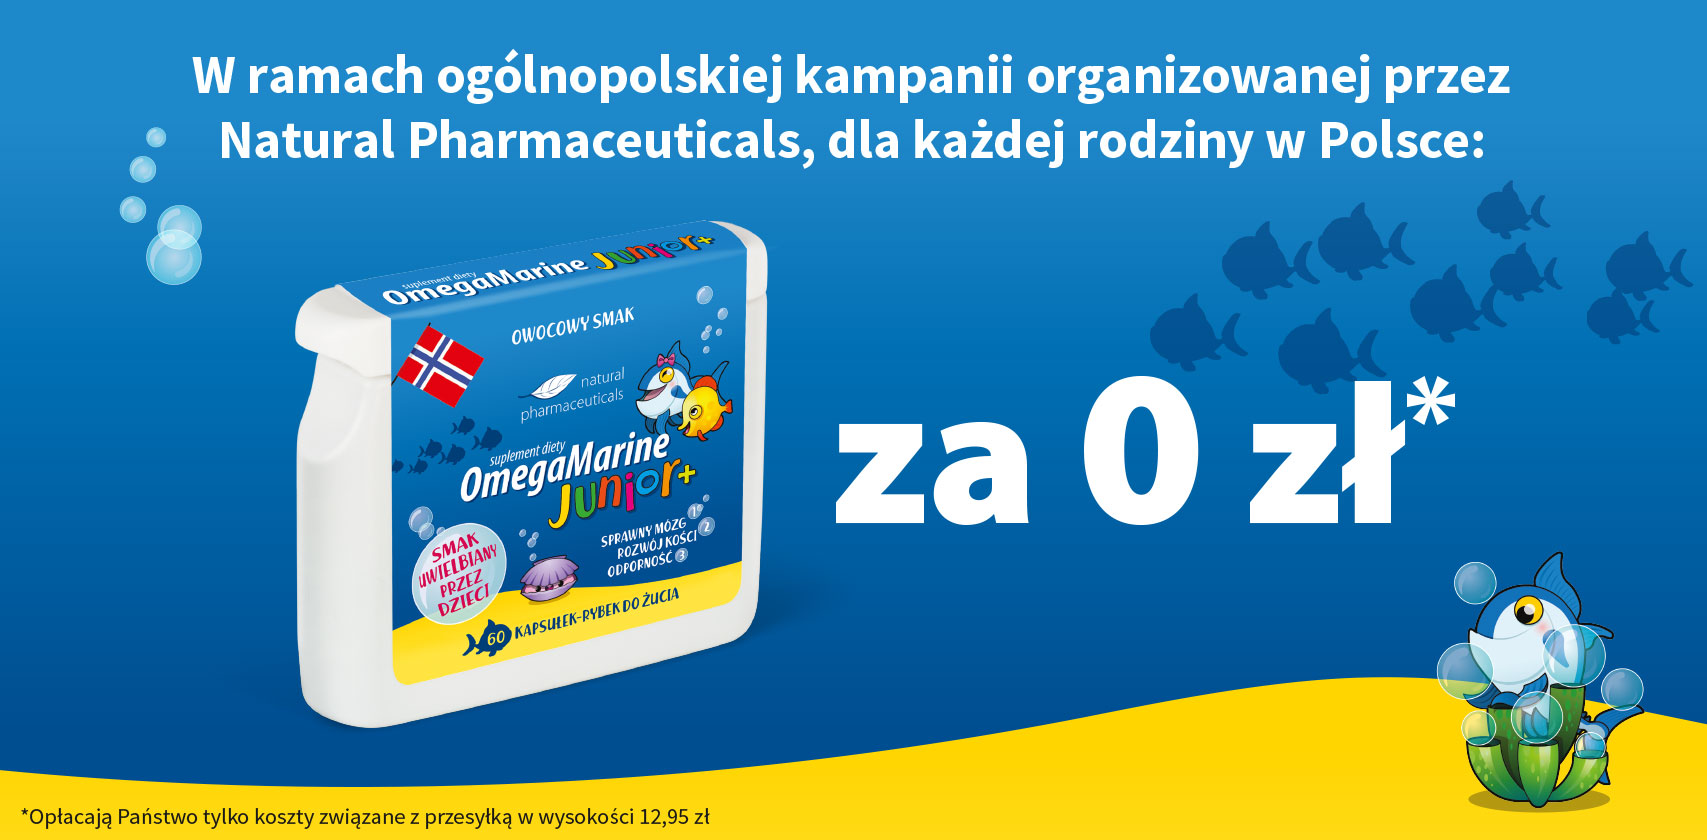 W ramach kampanii organizowanej przez Natural Pharmaceuticals, dla każdej rodziny w Polsce: